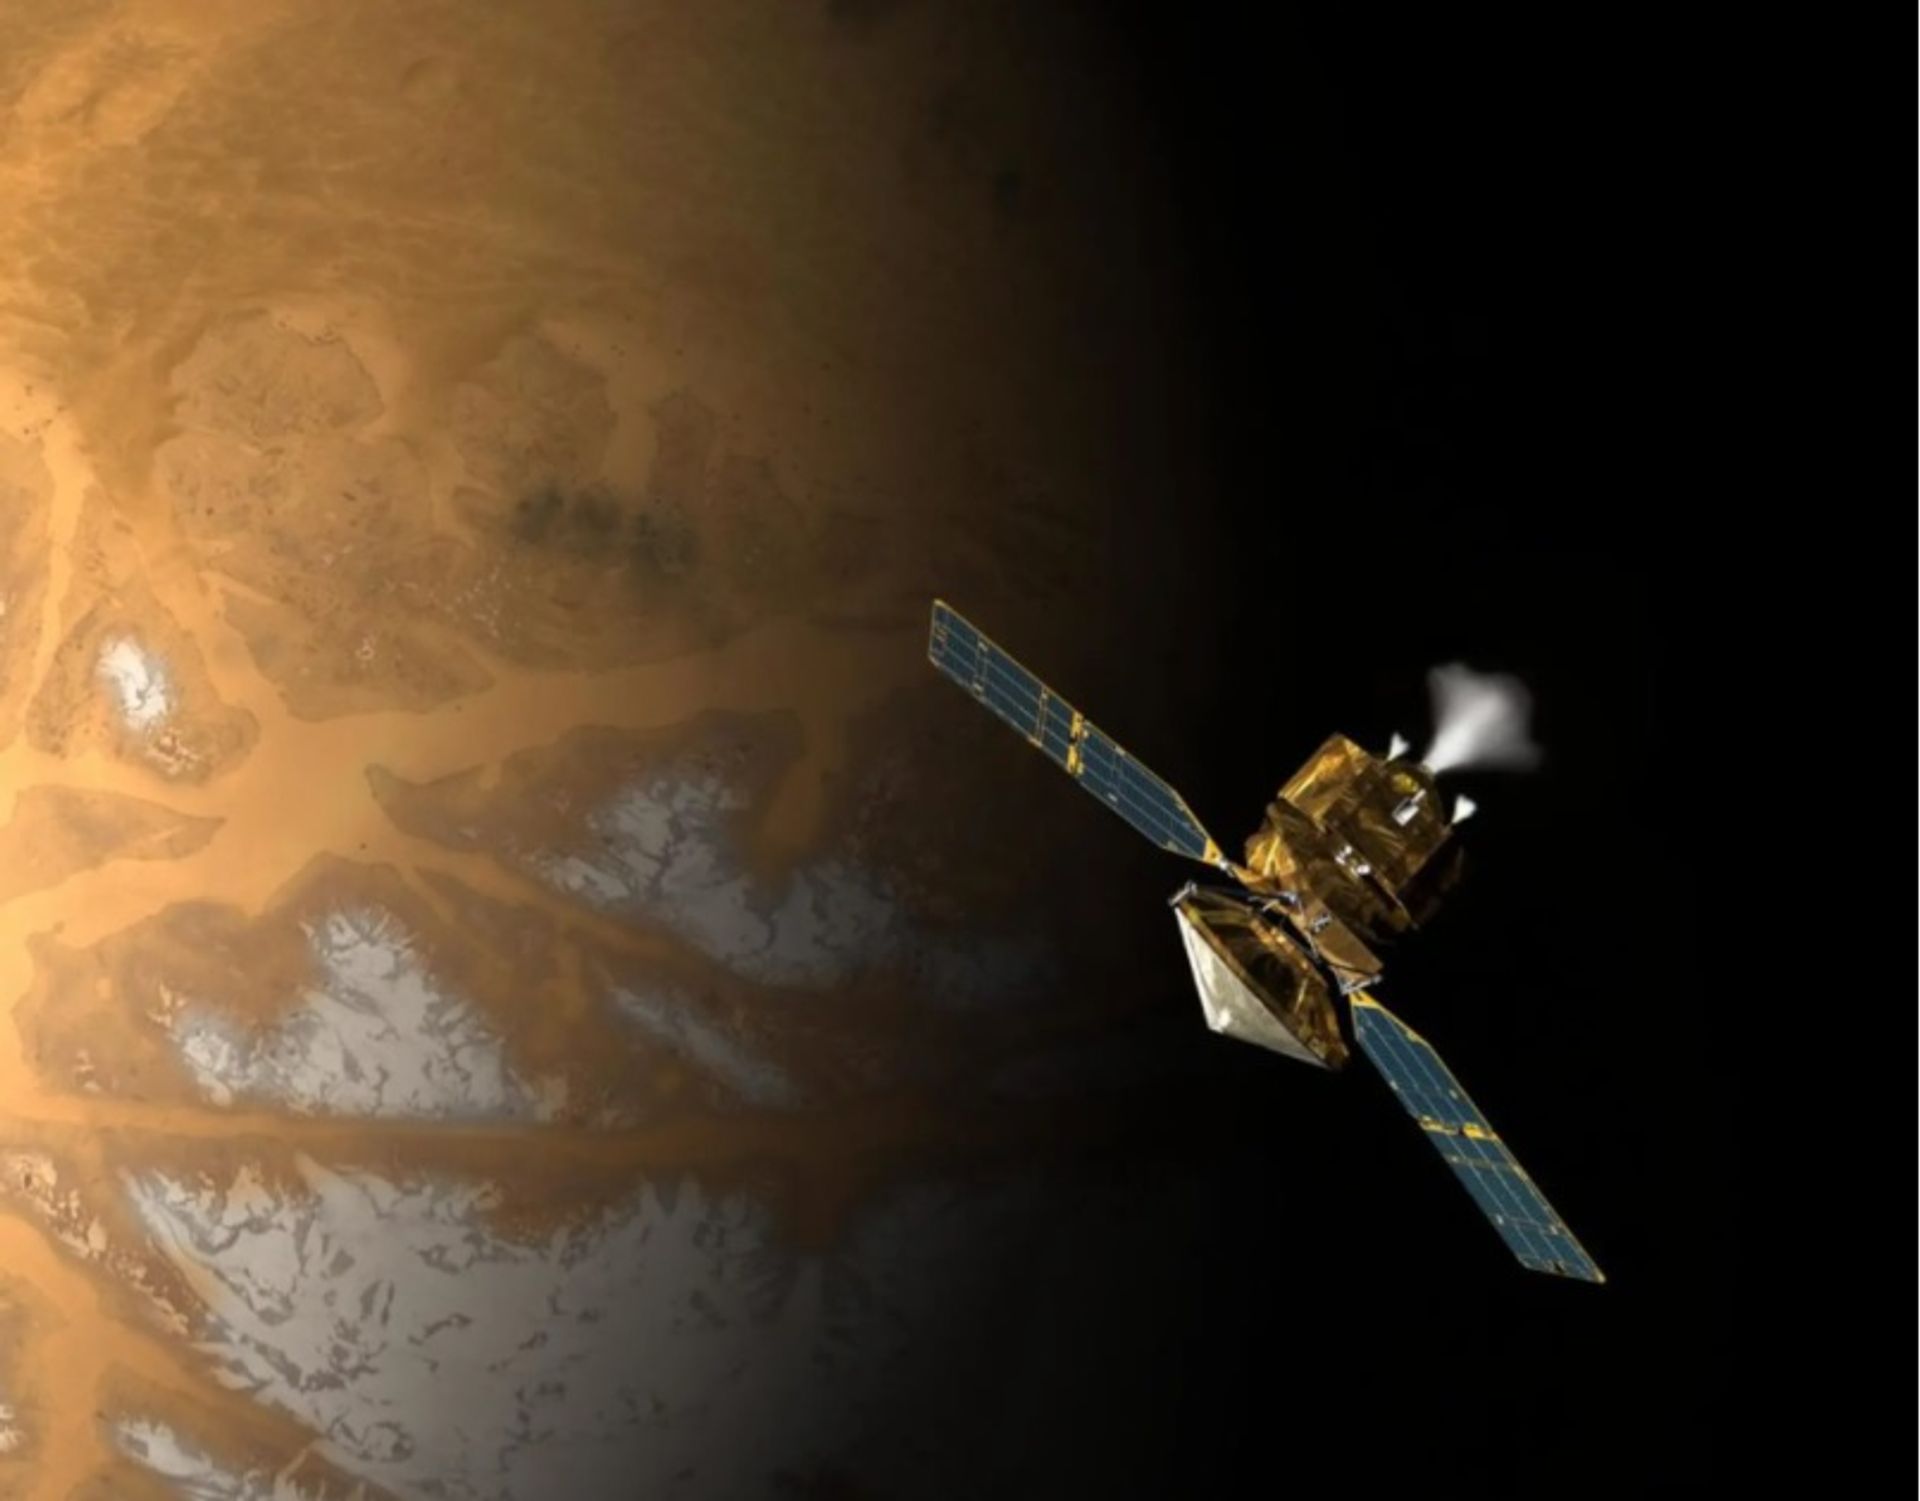 קונספט אמן של NASA Mars Reconnaissance Orbiter במהלך התהליך הקריטי של כניסה למסלול מאדים

צילום: נאס"א/JPL